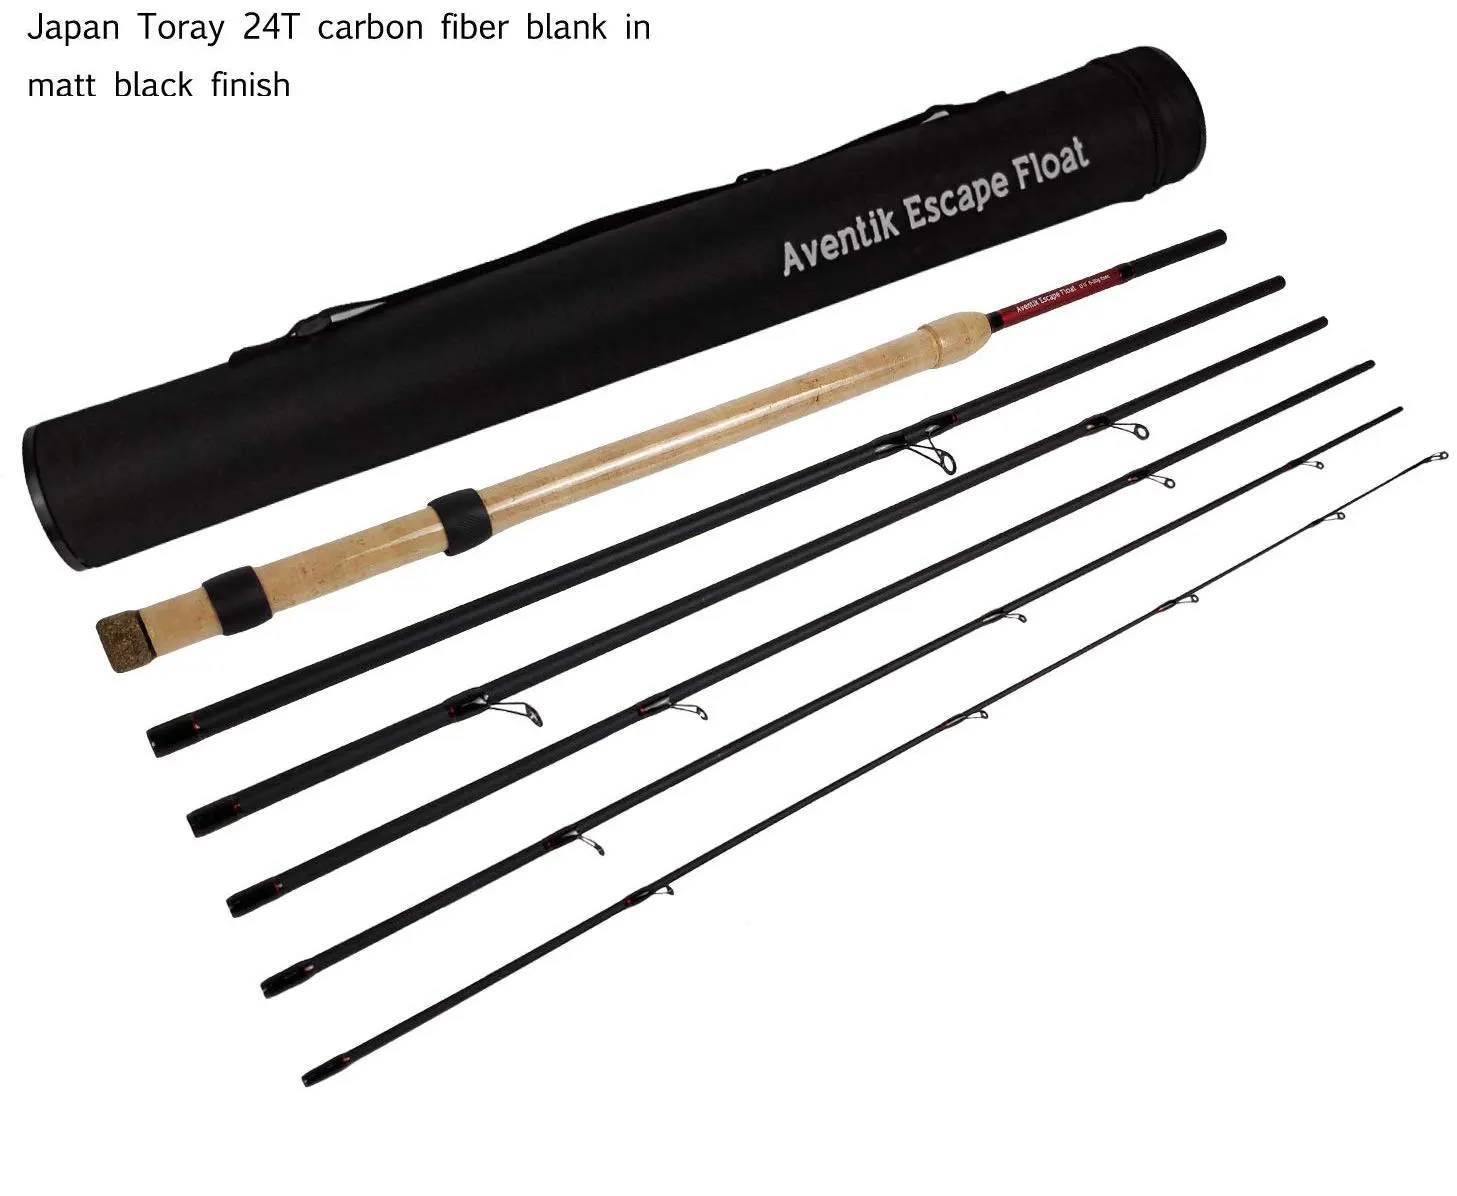 Flottant canne à pêche 13'0'' 6-20g 6sec Japon Toray 24T en fiber de carbone en finition noir mat (B07)